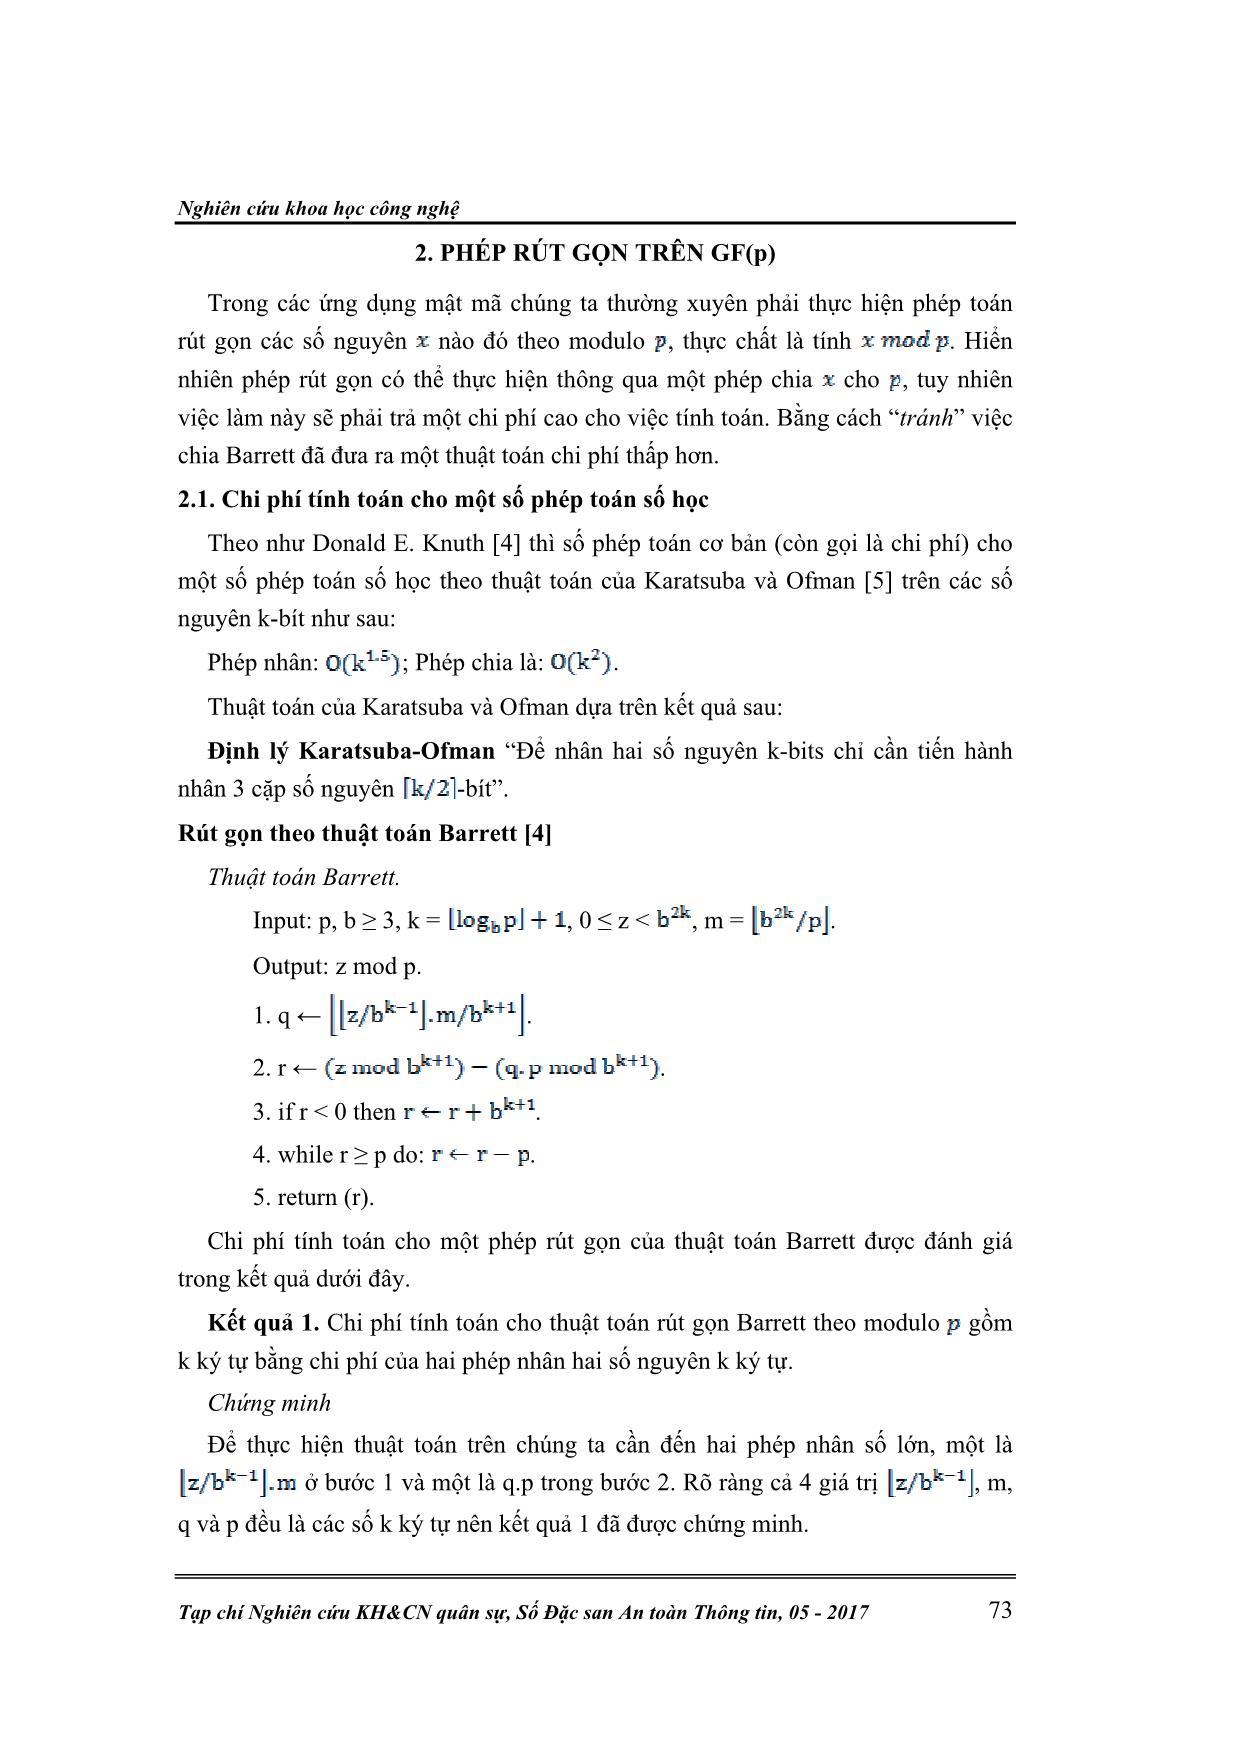 Đề xuất dạng tham số cho các hệ mật có độ an toàn dựa trên bài toán logarit rời rạc trên trường GF(P) trang 2